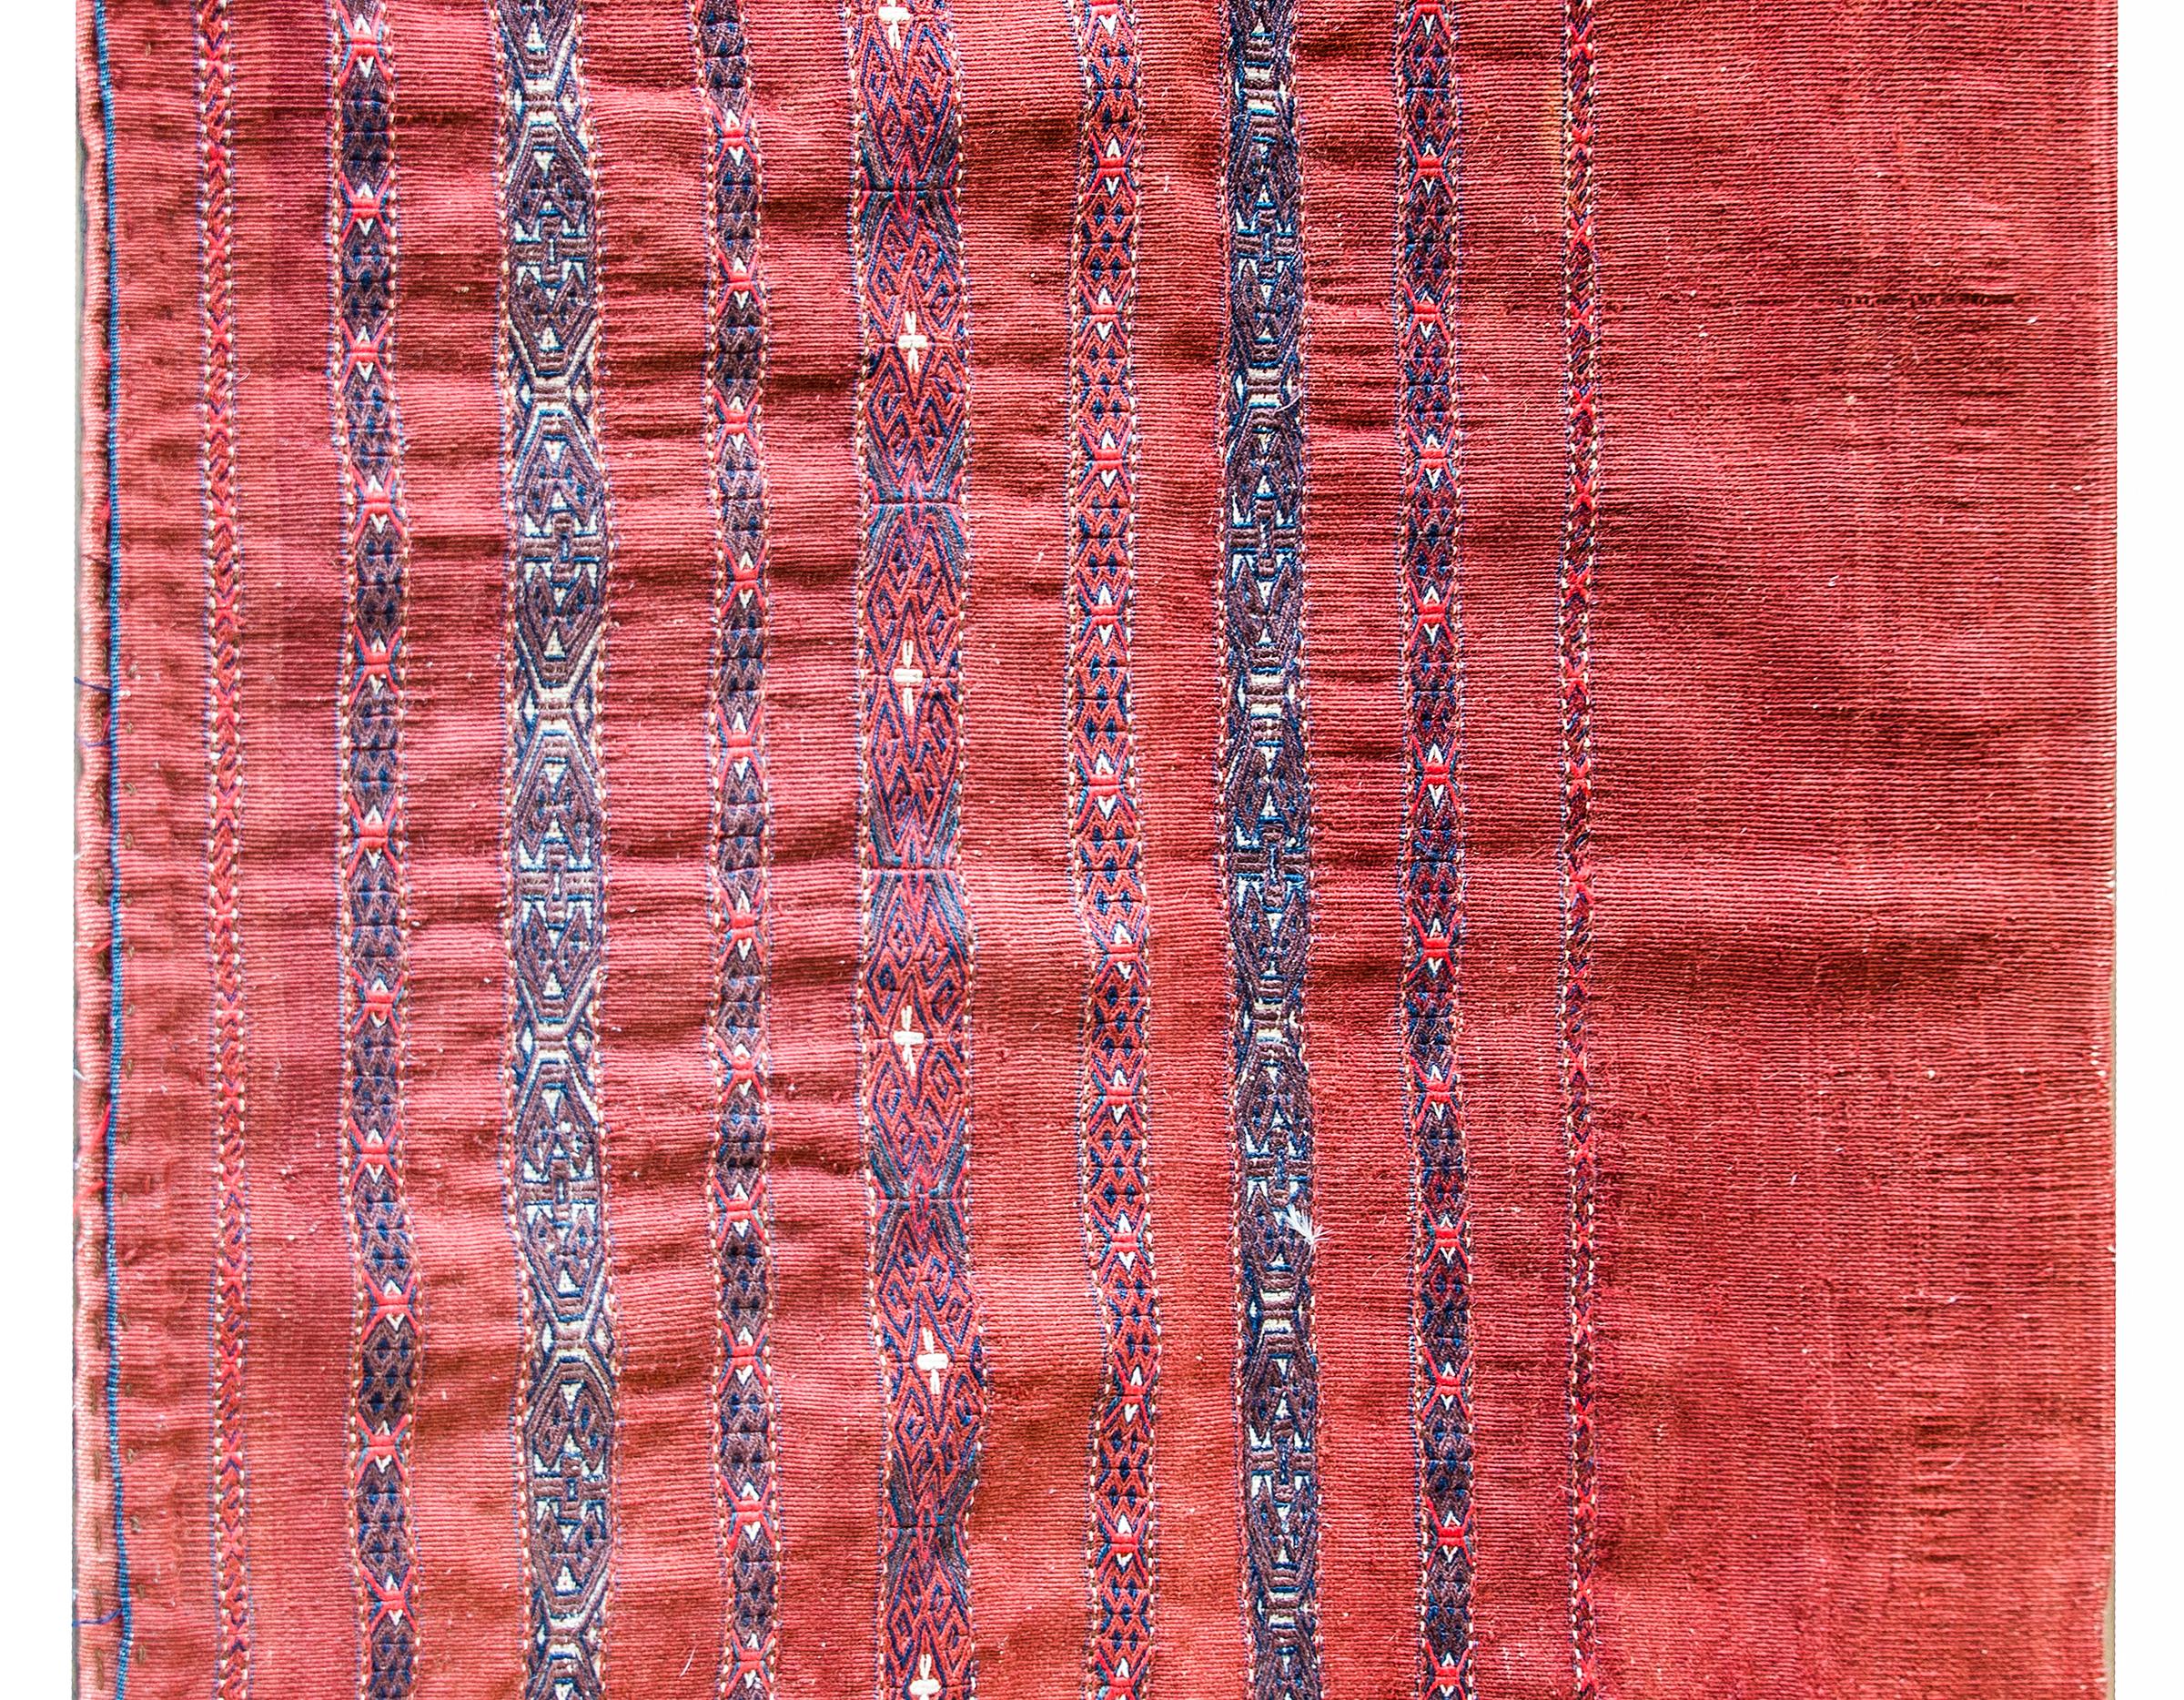 Eine wunderbare frühen 20. Jahrhundert persischen Turkman Tasche Gesicht Teppich mit einem einfachen karminroten Grund mit dicht gewebten geometrischen gemusterten Streifen in Indigo, Karminrot und Braun gewebt.